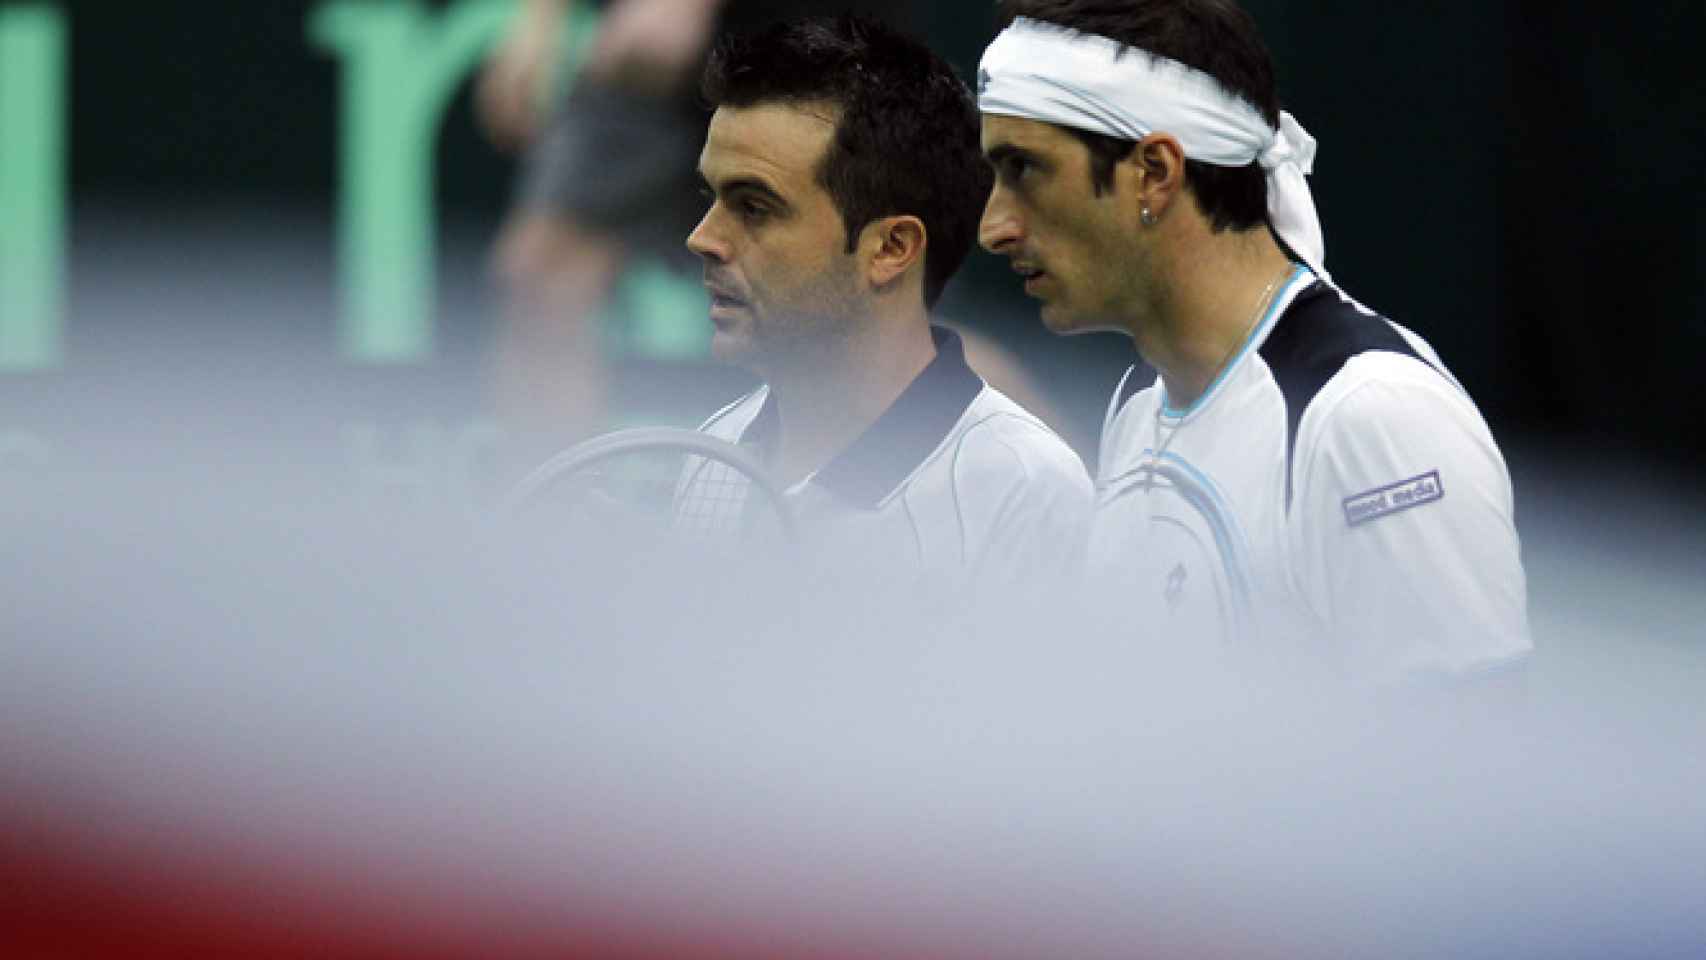 Bracciali y Starace, en un partido de la Copa Davis.